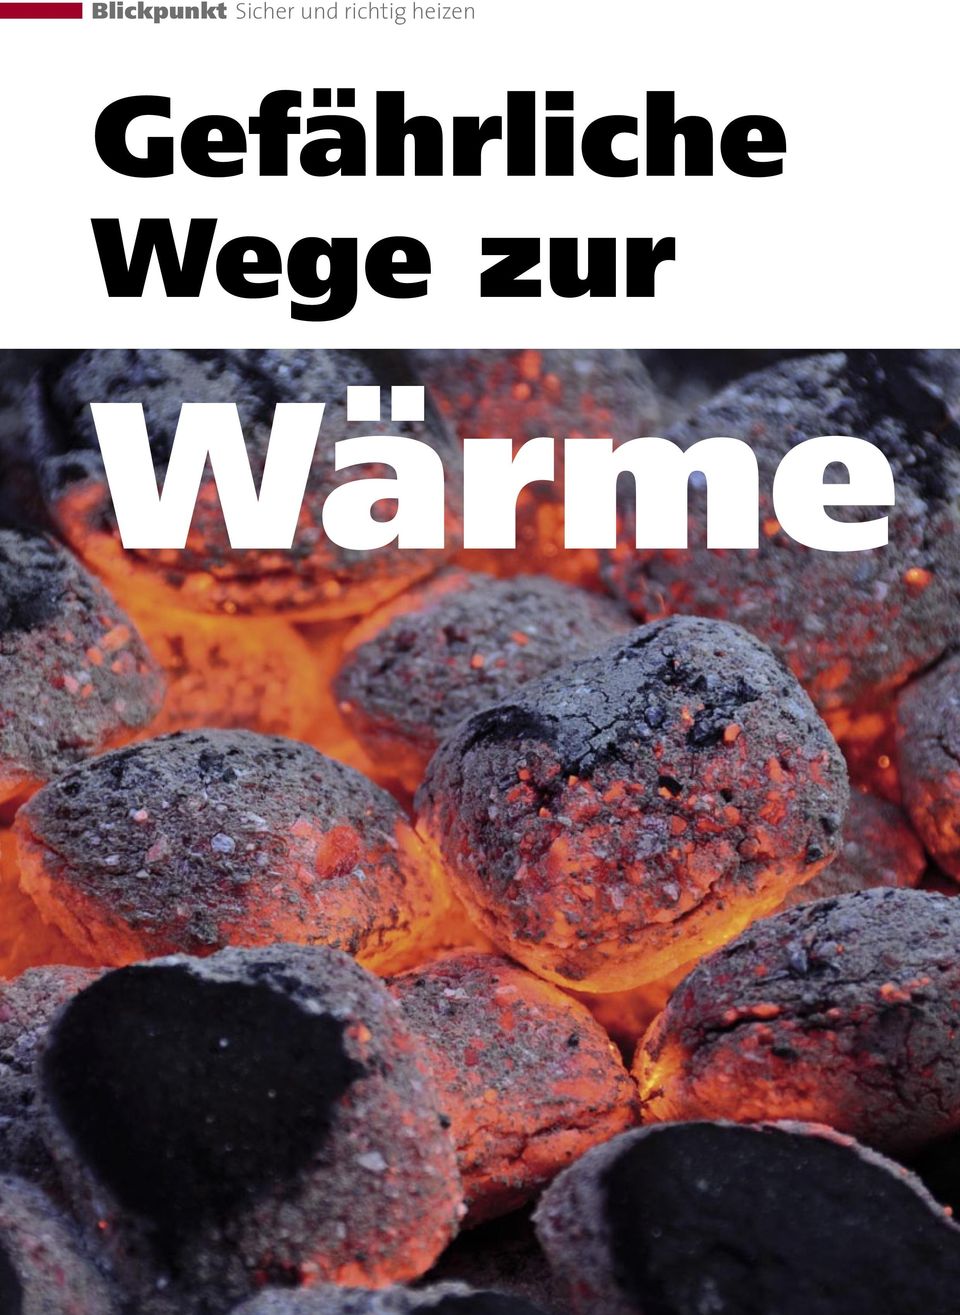 Wege zur Wärme 6 Deutsche